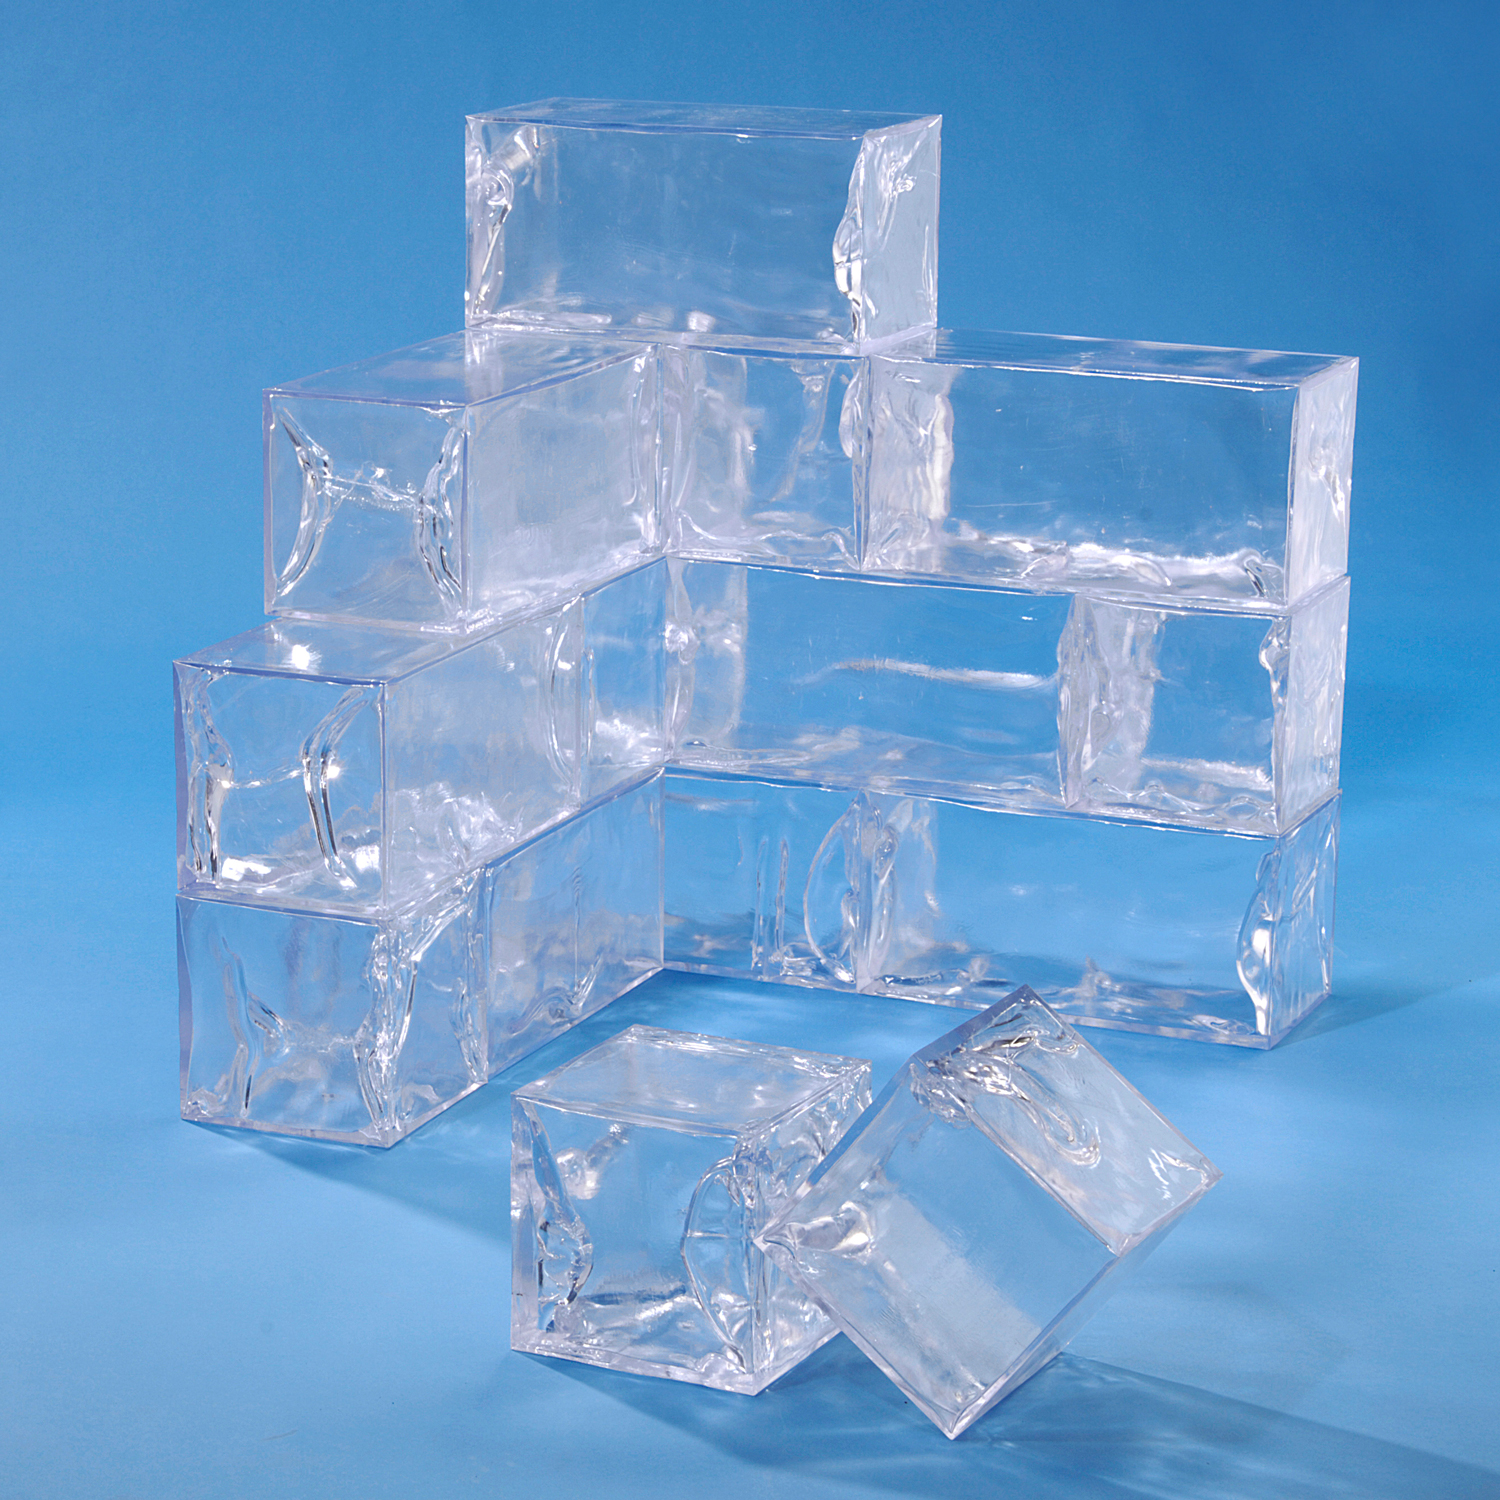 https://www.wintereffects.com/media/image/eb/26/71/eiswuerfel-ice-cube-acryleis-ecke.jpg